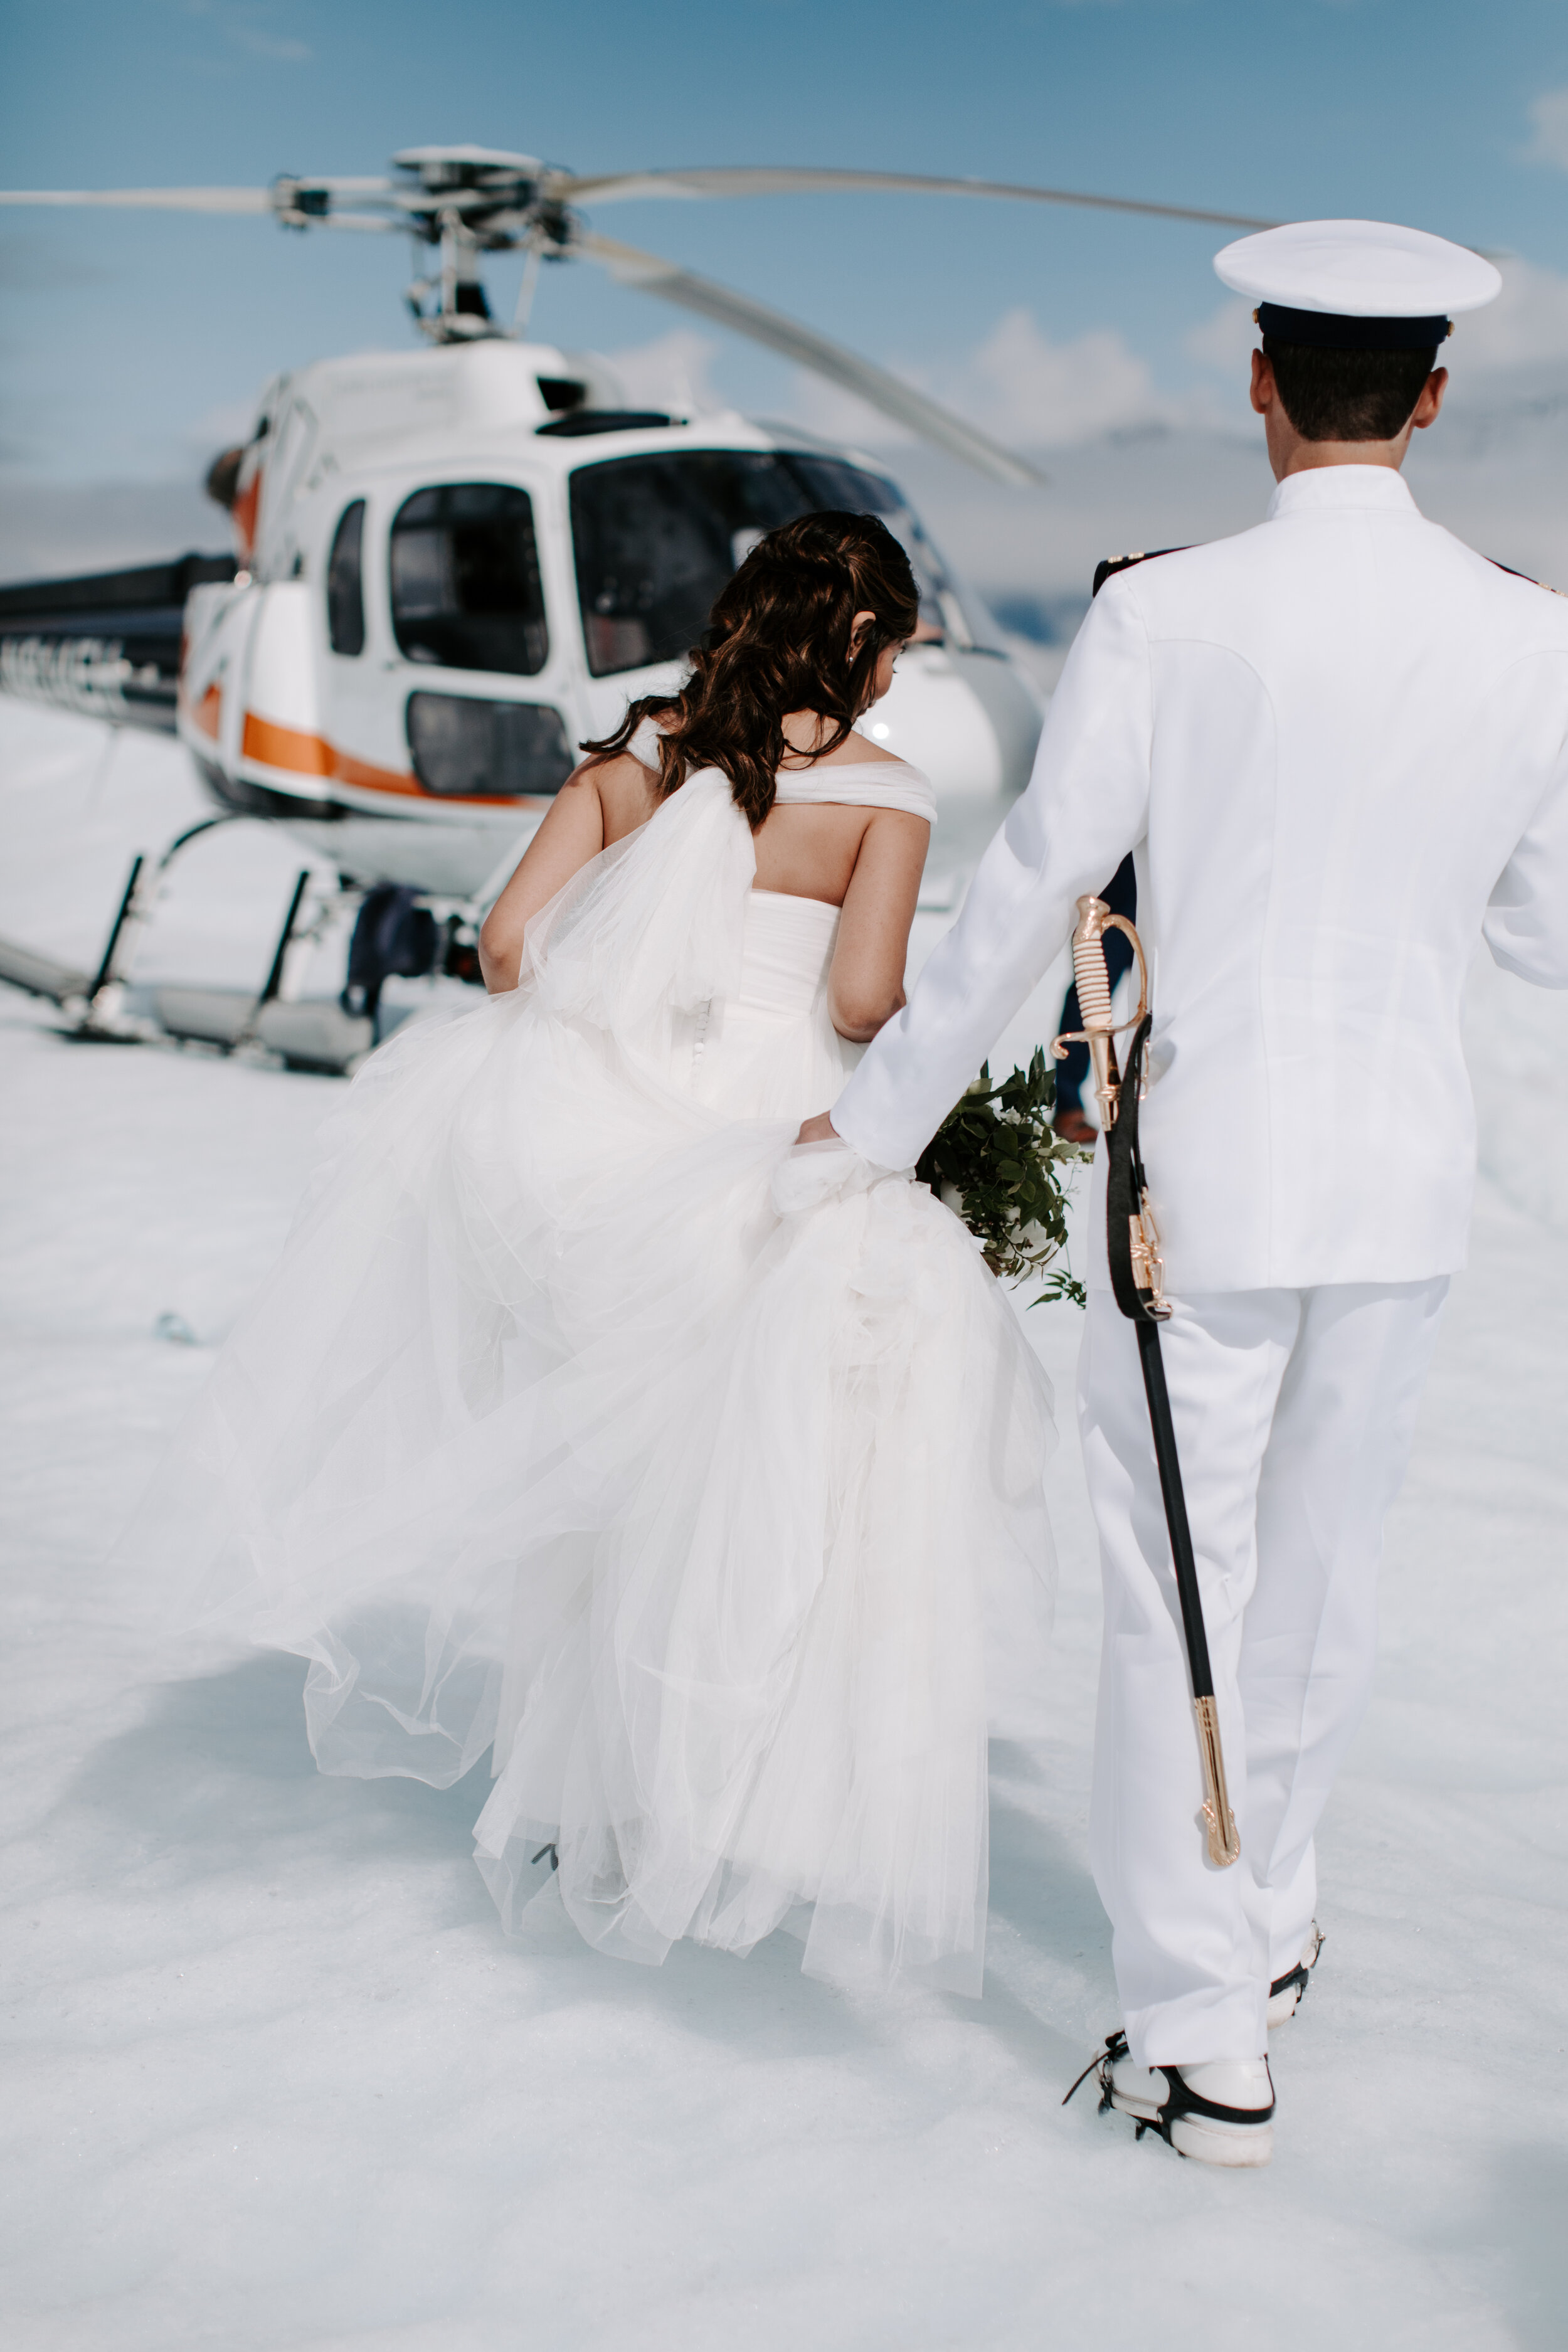 Alaska Helicopter Wedding 